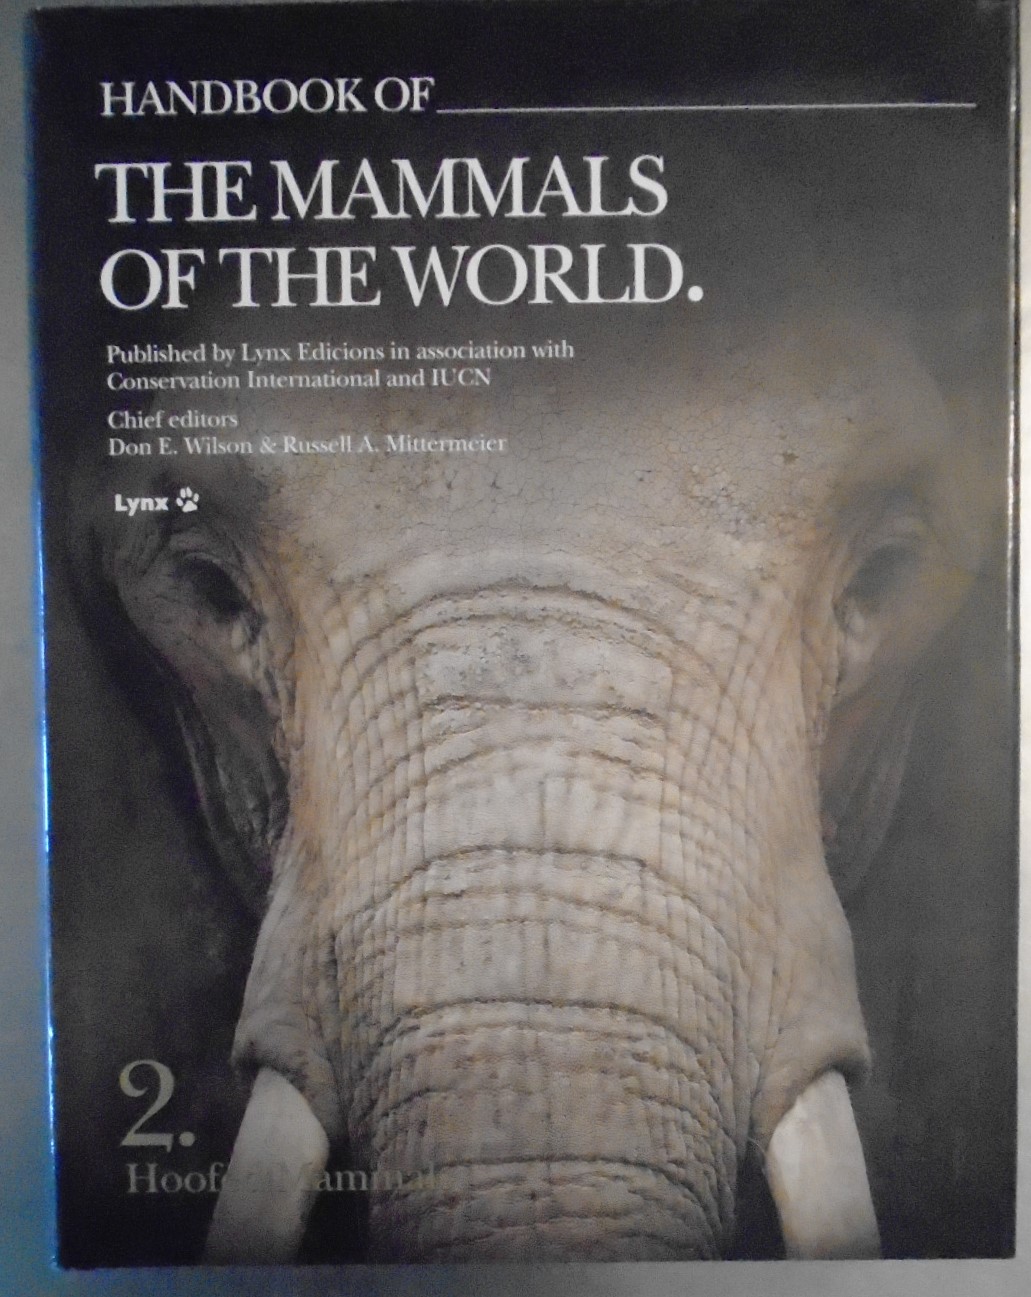 Handbook of the Mammals of the World. Vol.2: Hoofed Mammals - Wilson, Don E & Mittermeier, Russell A